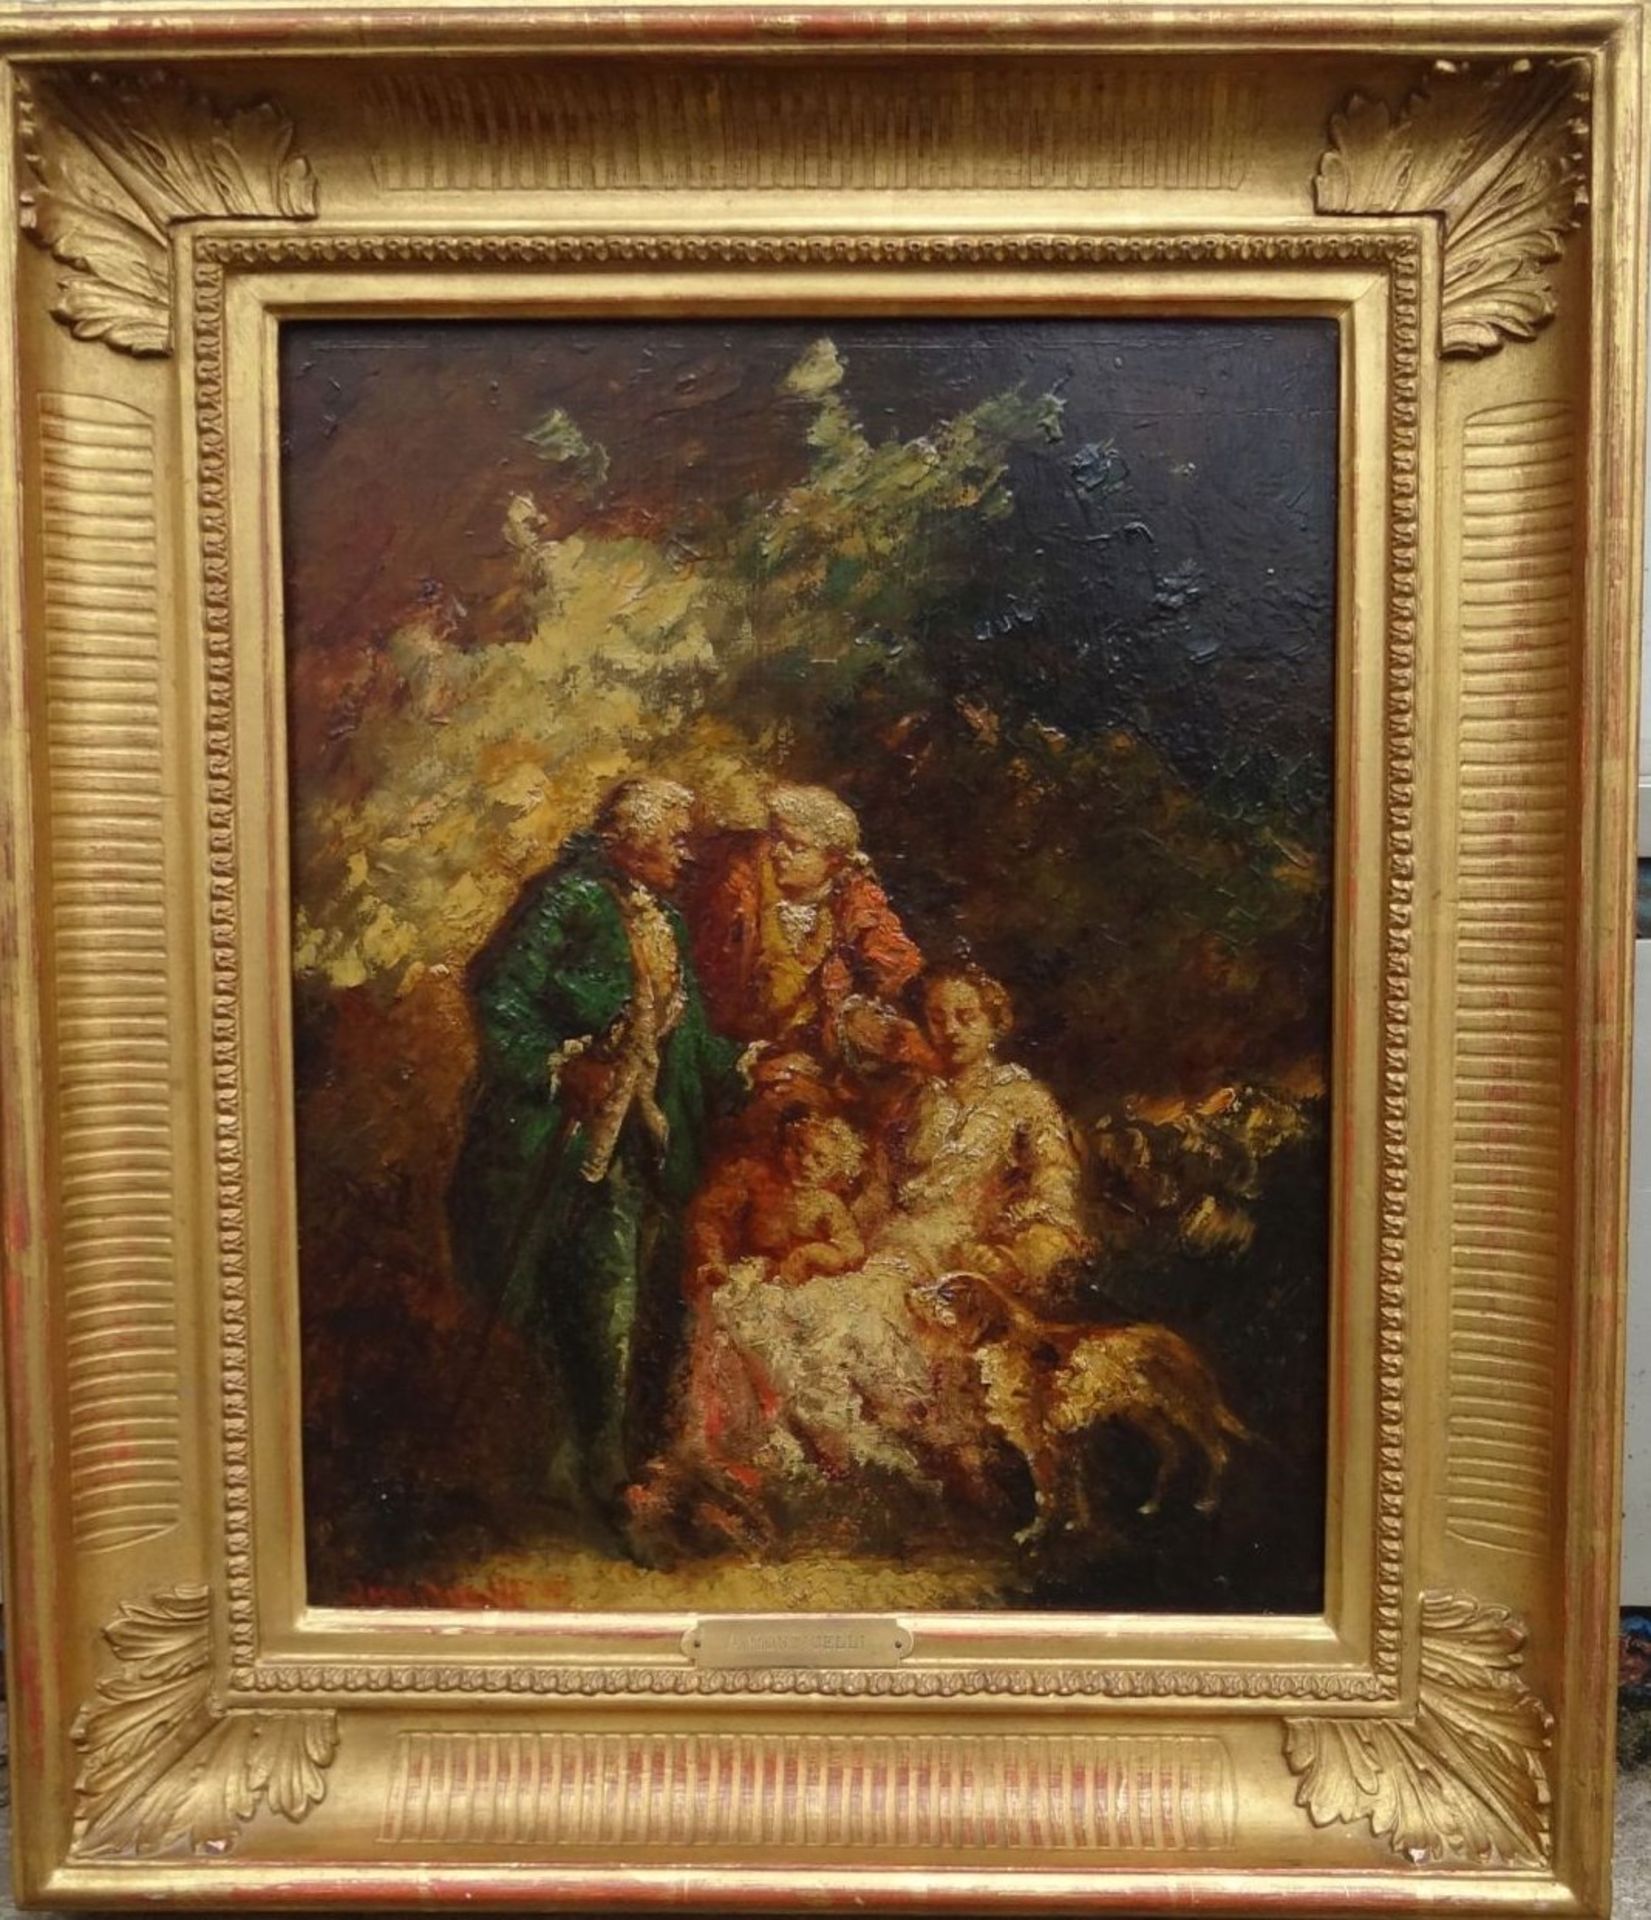 Adolphe MONTICELLI (1824-1886) "Elegantes aux chien" Öl/Holz, 40x32 cm, gerahmt RG 57x48 c - Image 2 of 8